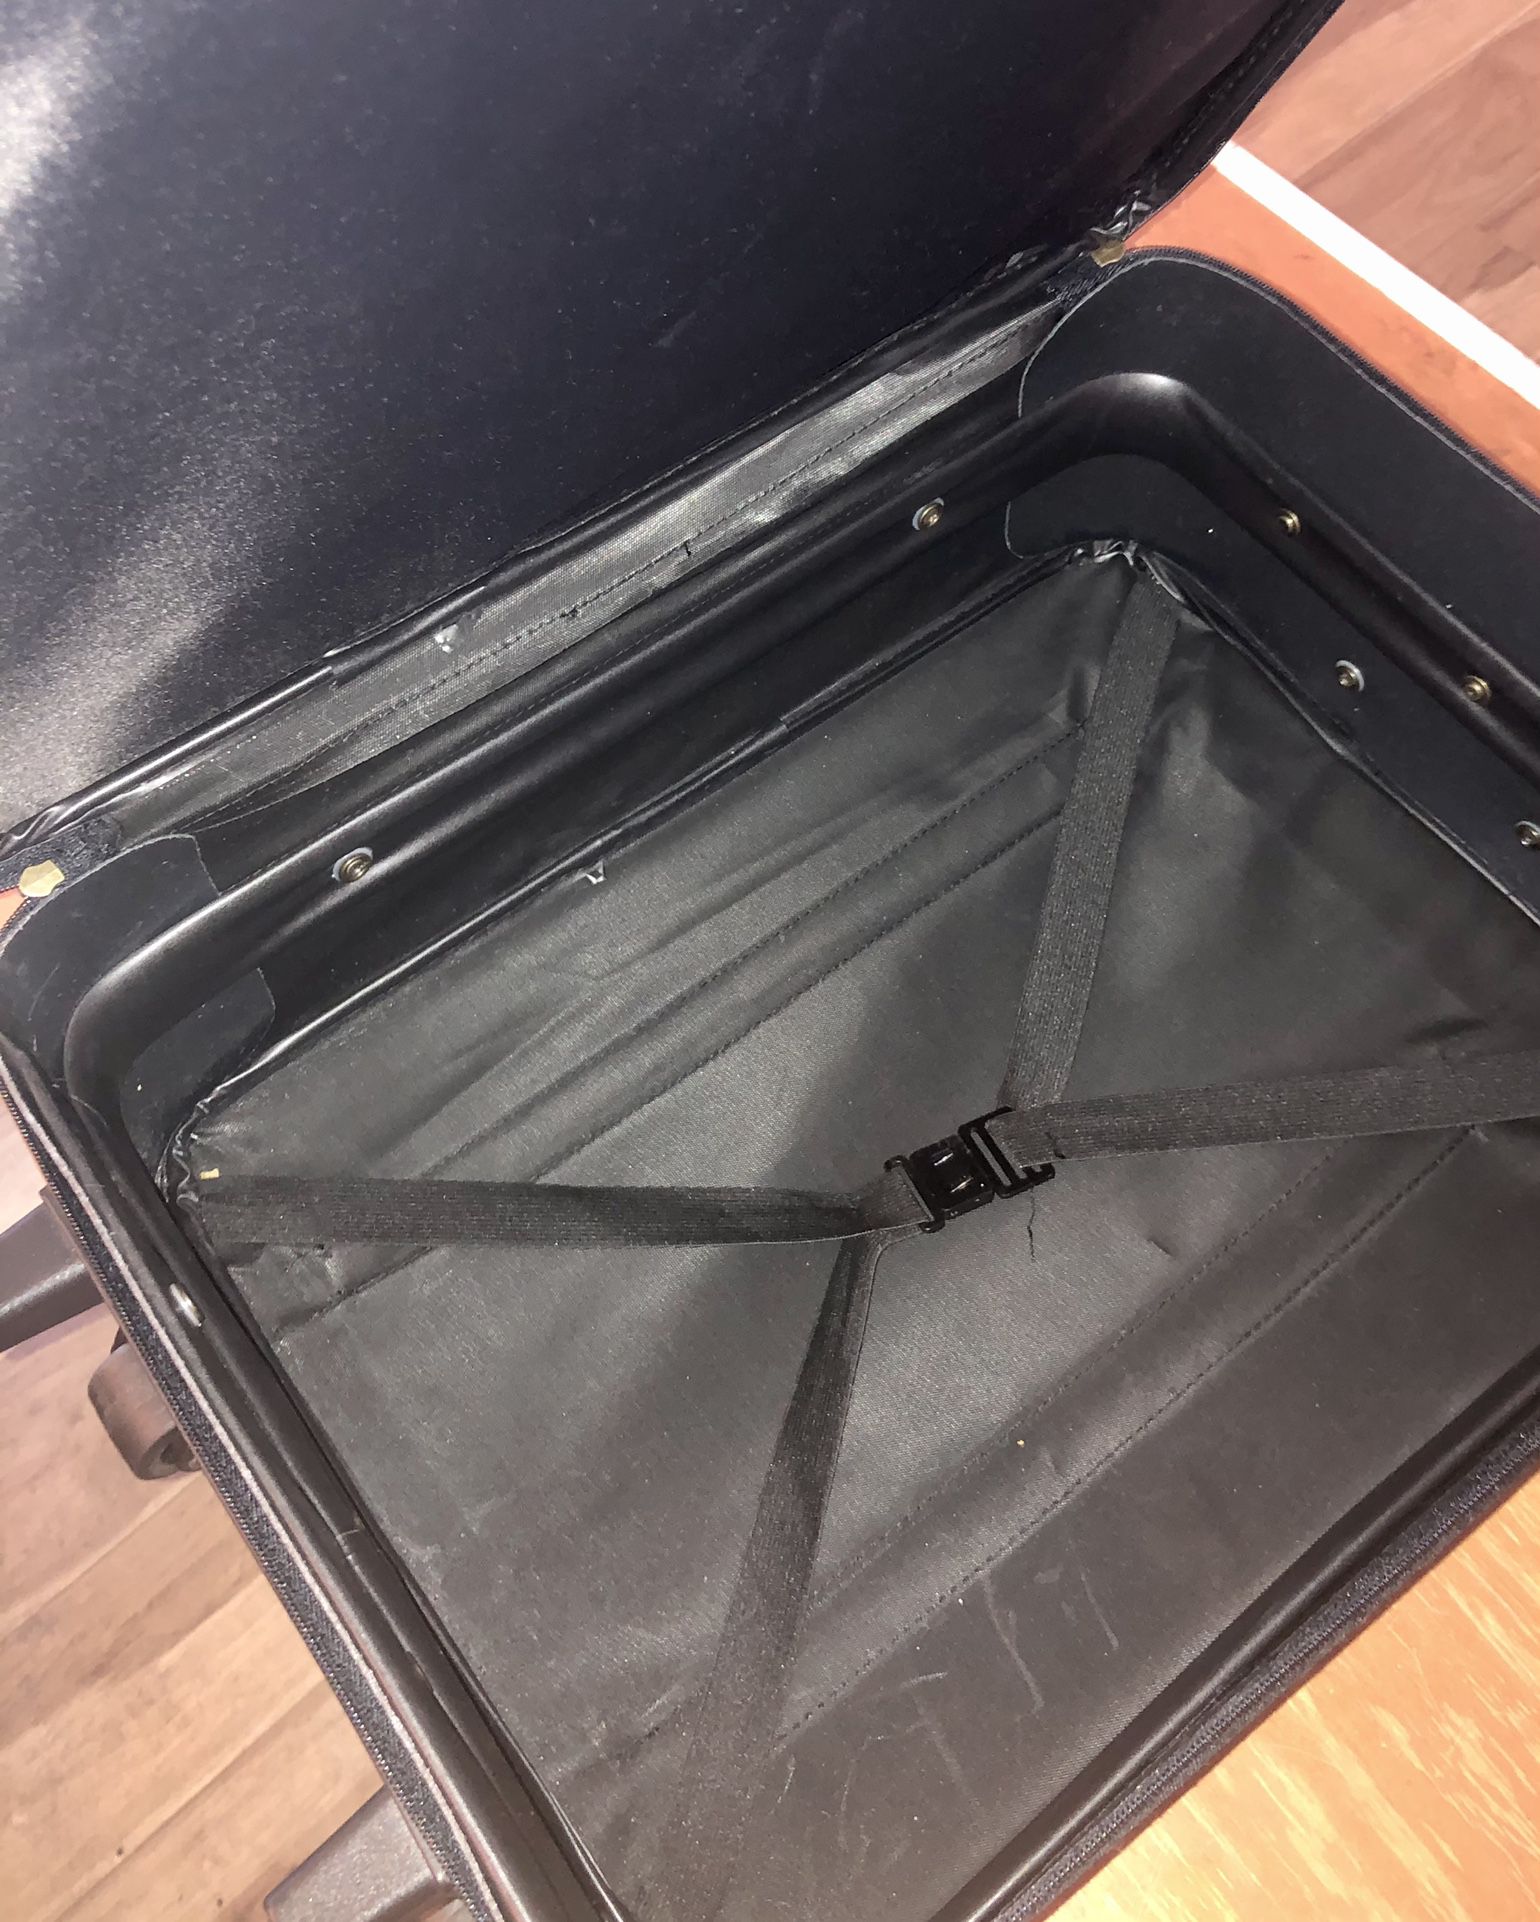 27 Wheeled Upright, Black – Mercury Luggage